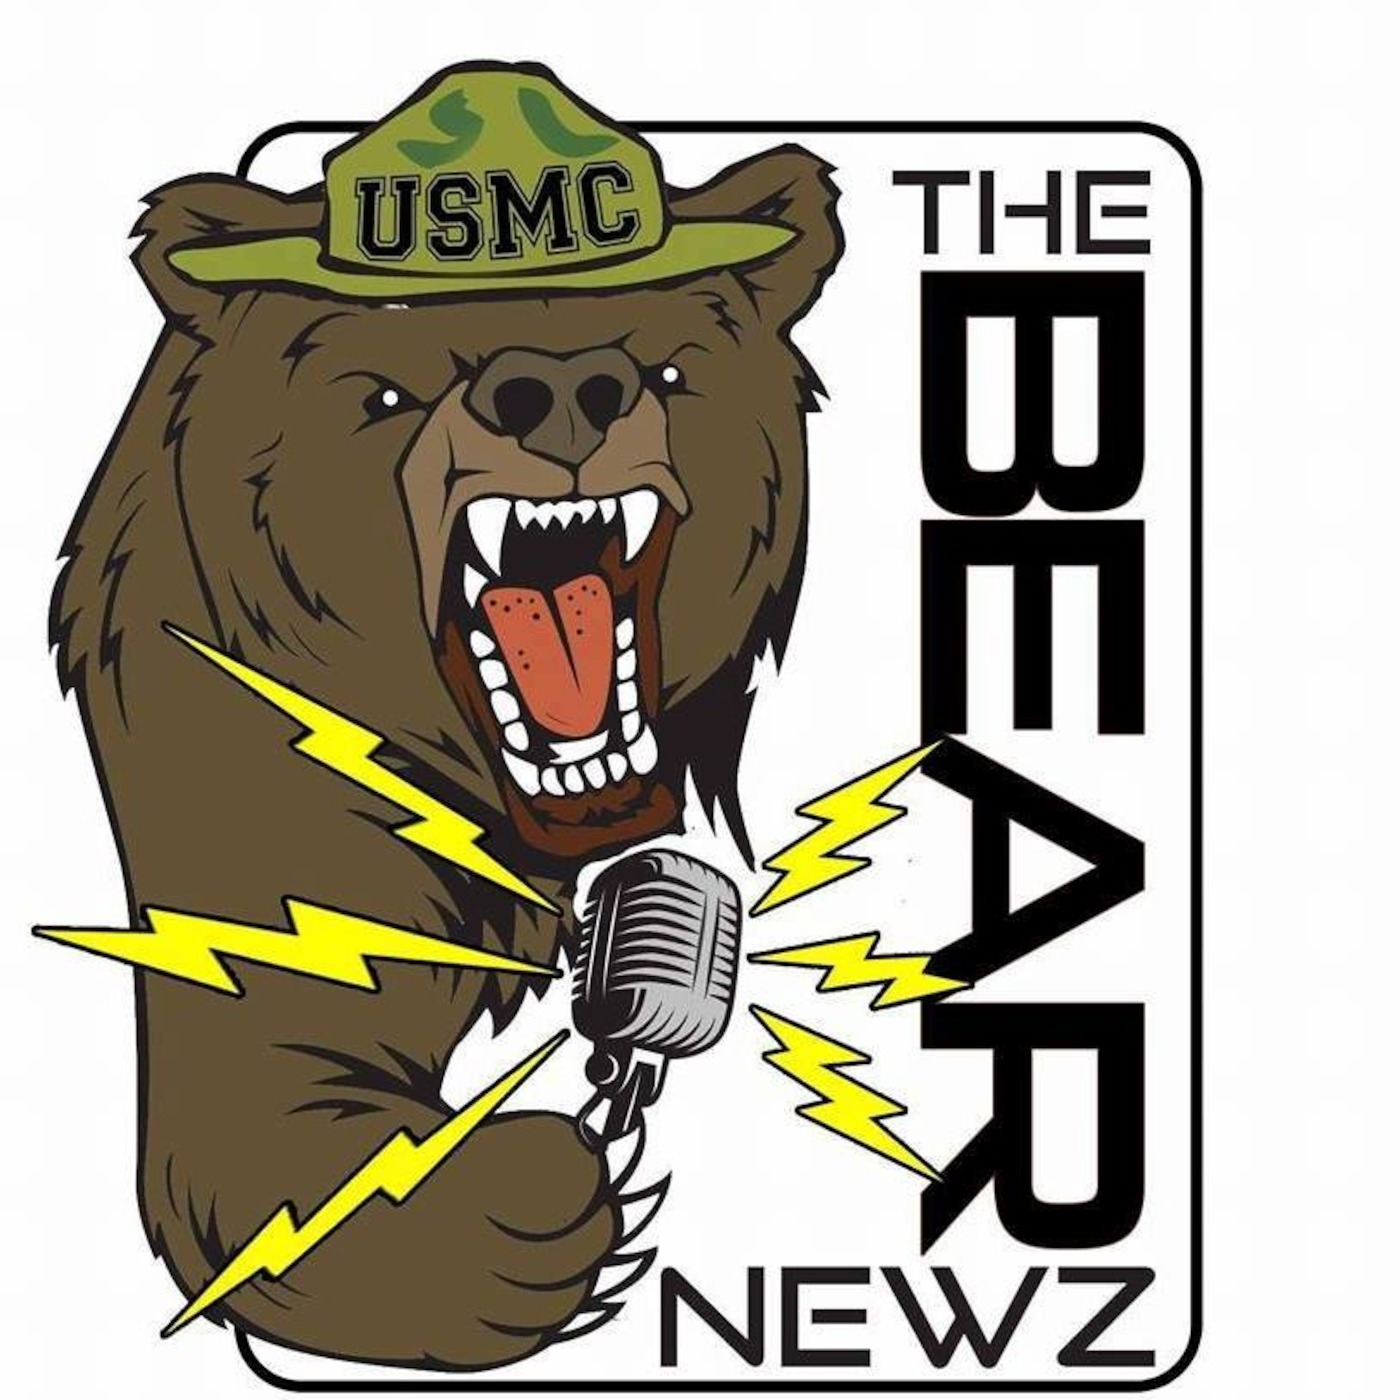 The Bear Newz 12/25/16